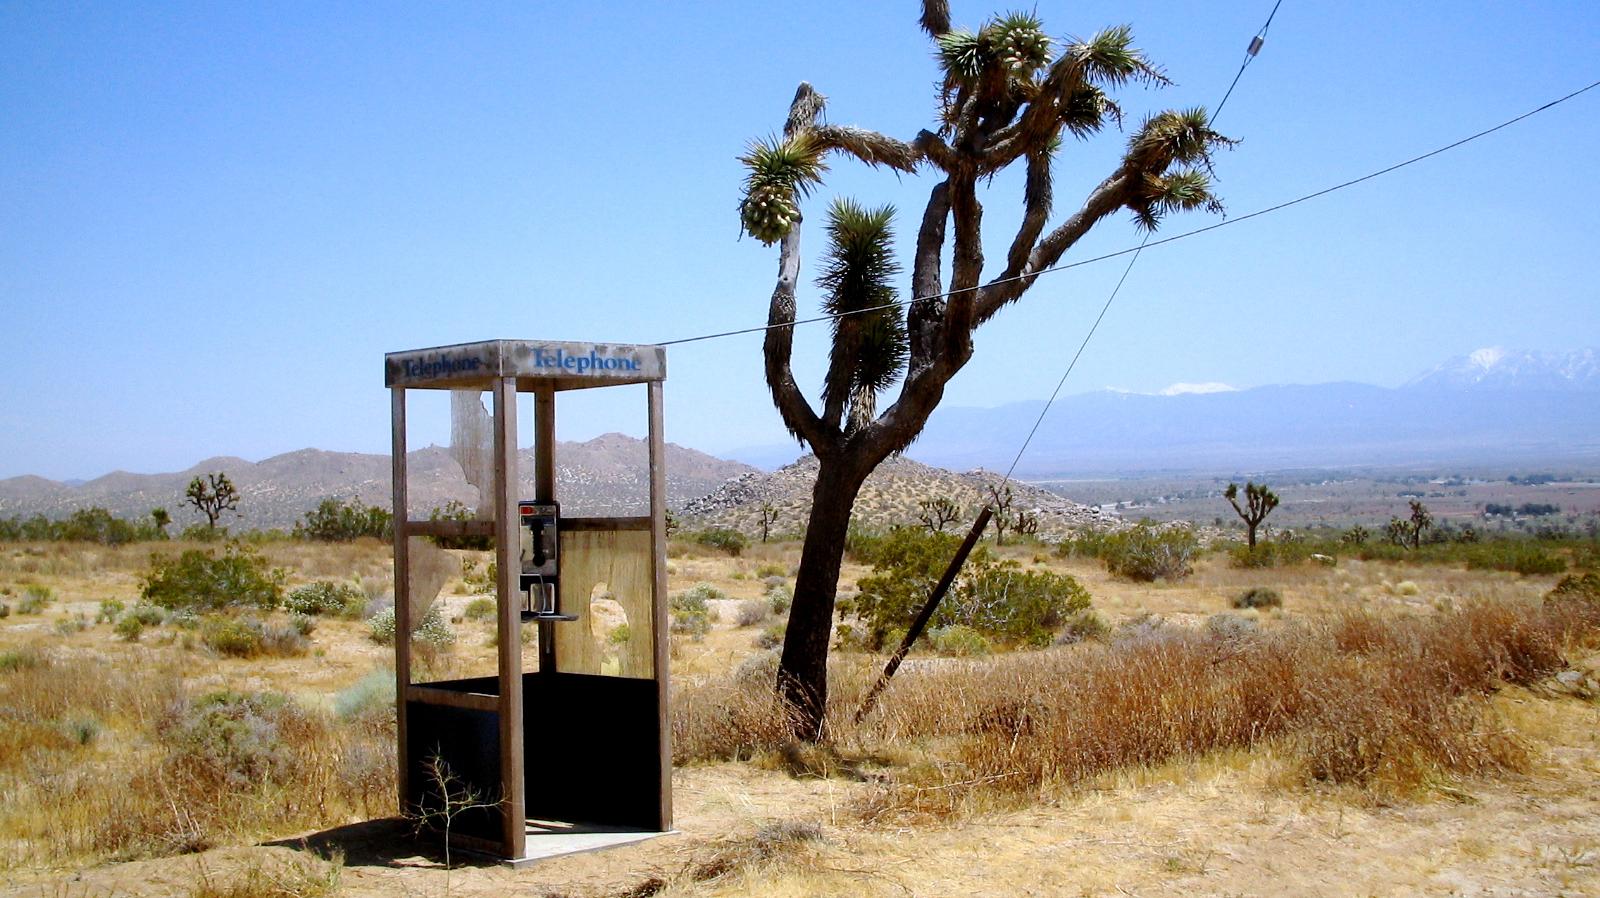 La « Mojave Phone Booth », une cabine téléphonique isolée dans le désert des Mojaves. © Mwf95, CC BY-SA 4.0, via Wikimedia Commons